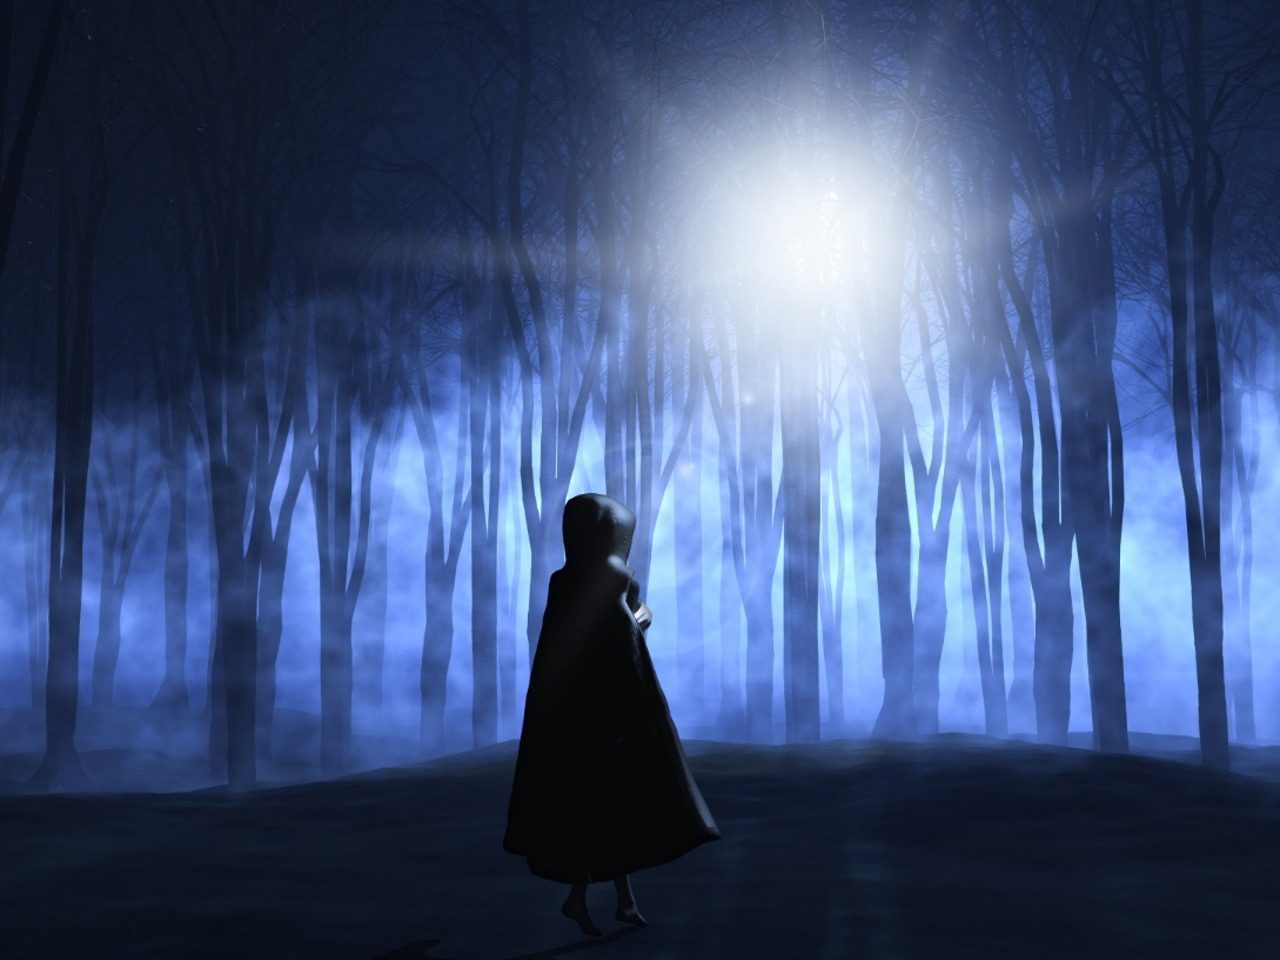 Image de fantasy, silhouette de femme sous une cape au plus profond d'un bois